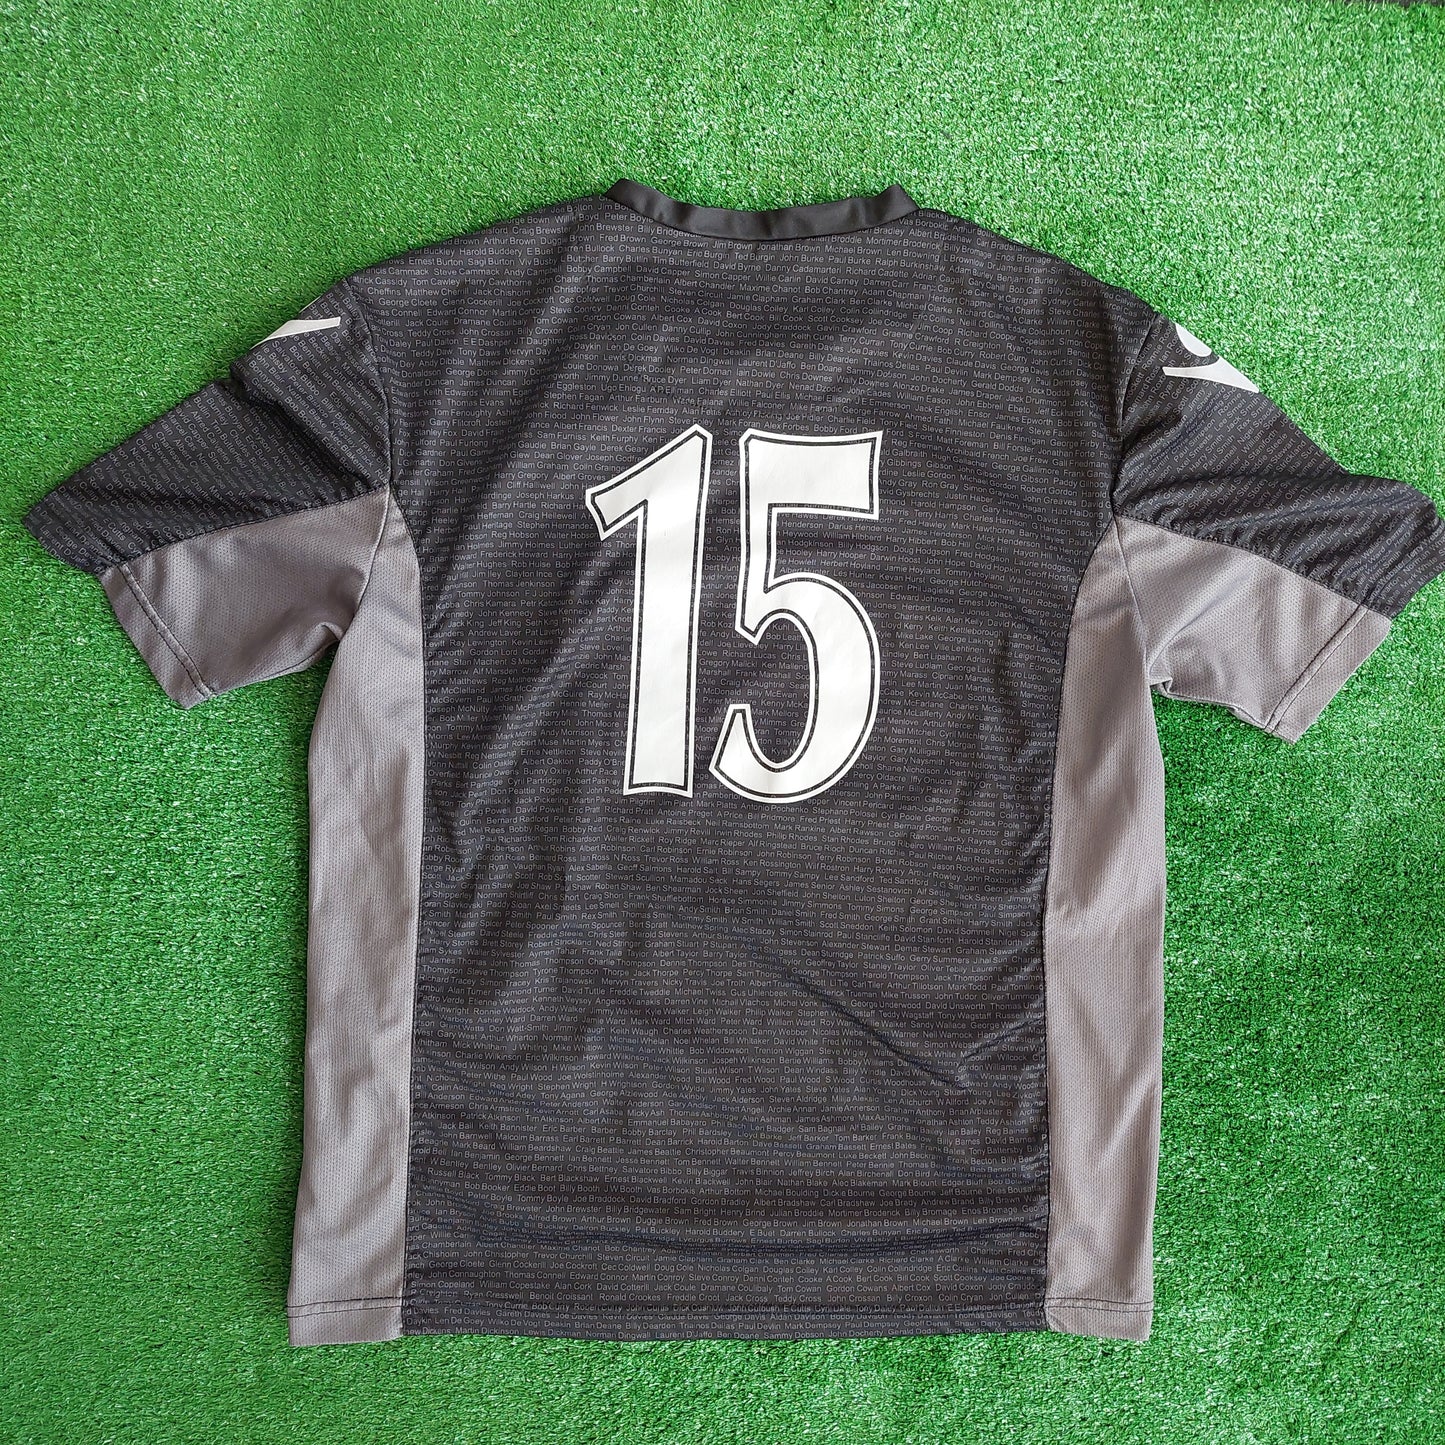 Sheffield United 2009/10 "120 Years" #15 Third Shirt (Very Good) - Size M